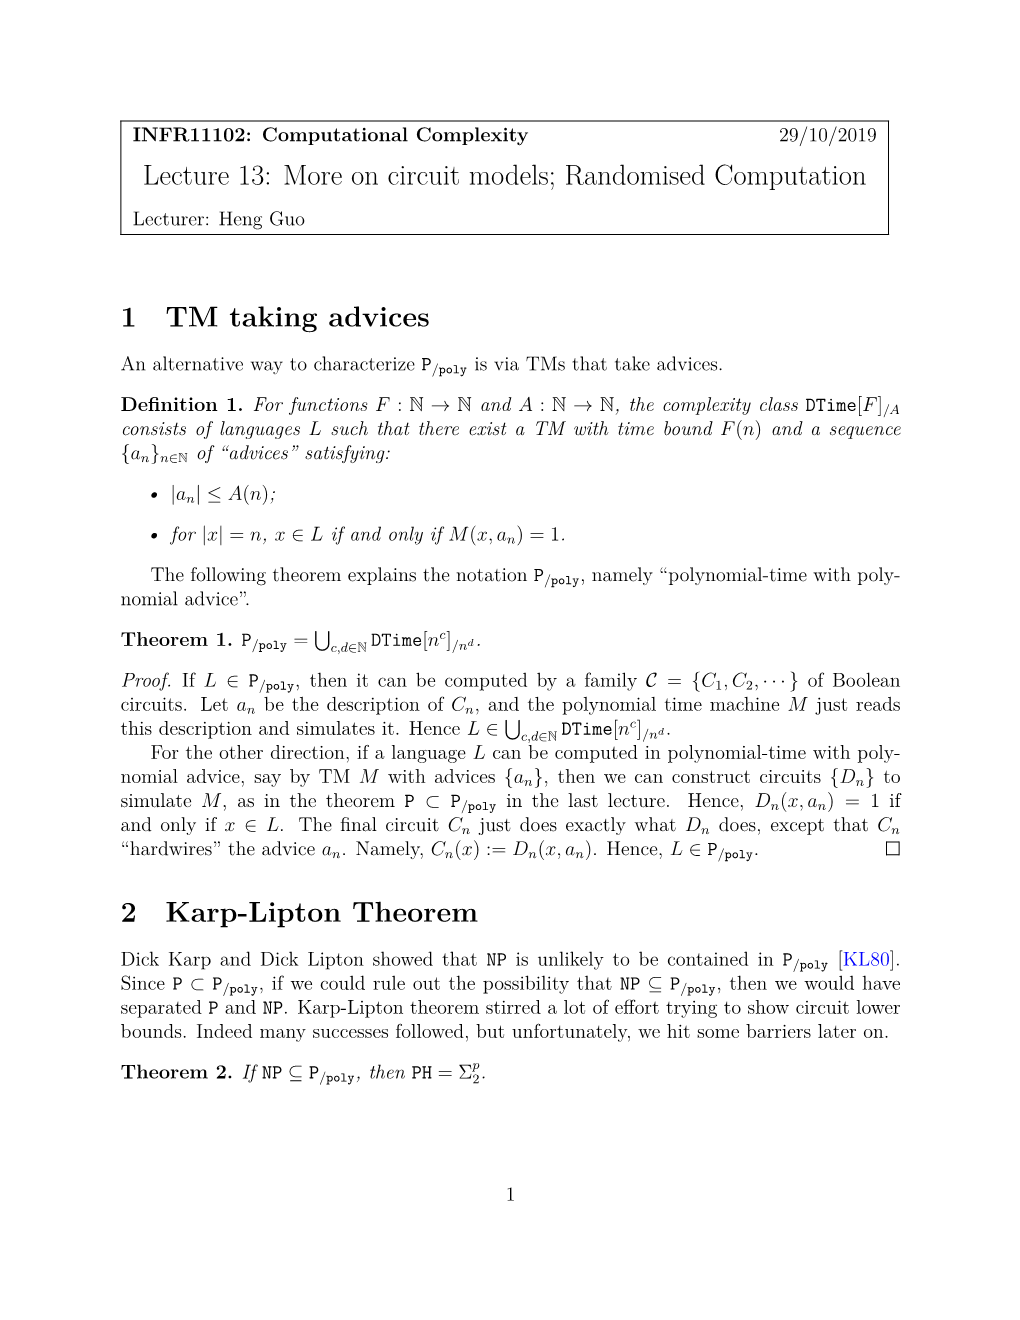 Randomised Computation 1 TM Taking Advices 2 Karp-Lipton Theorem